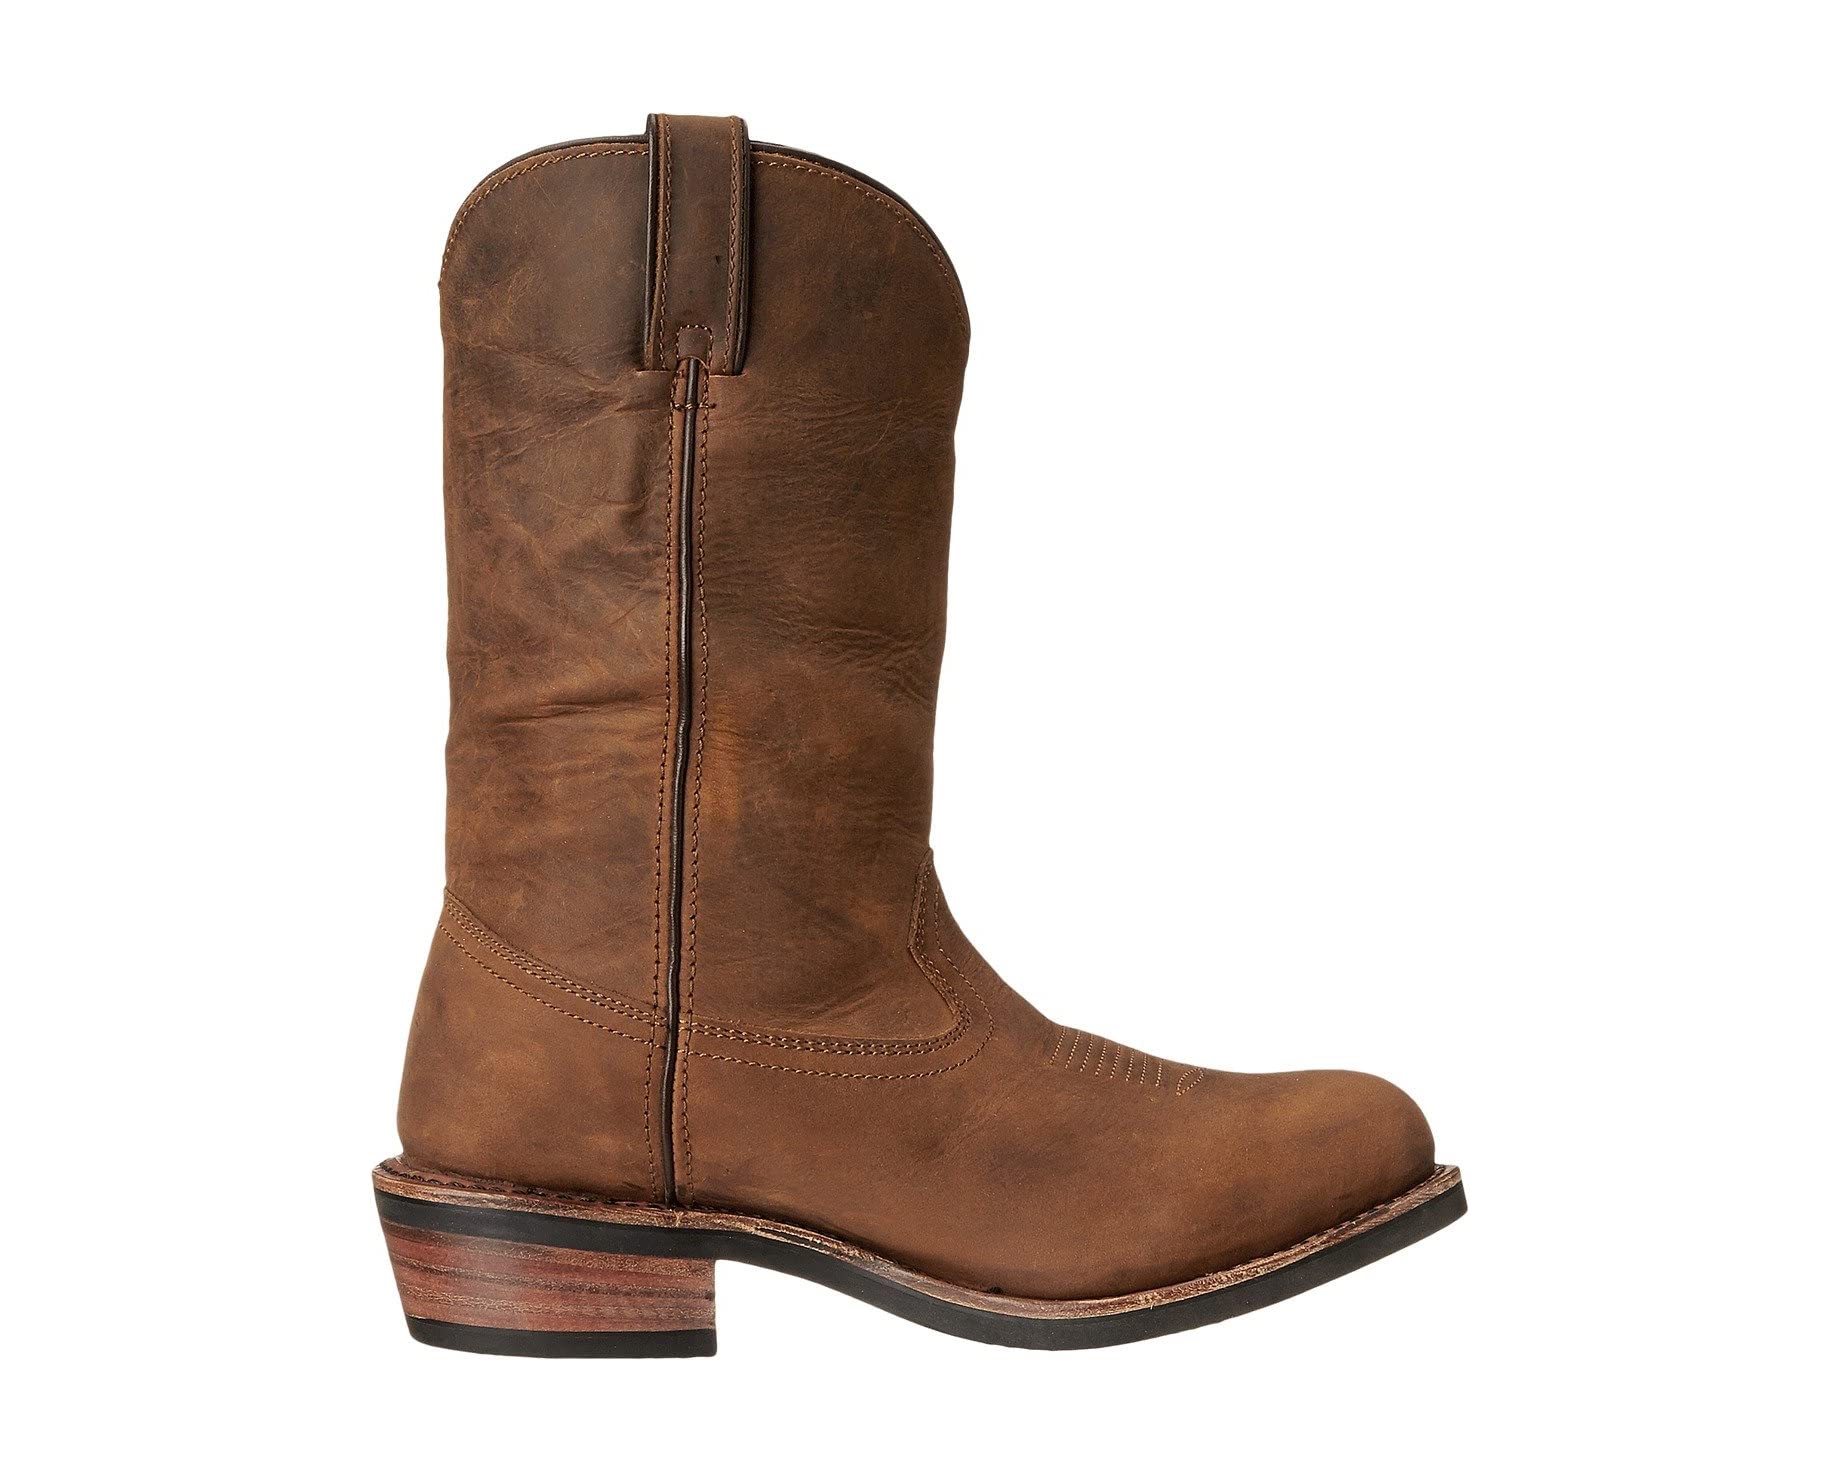 Ботинки Albuquerque Dan Post, коричневый ботинки dan post warrior composite toe цвет brown leather